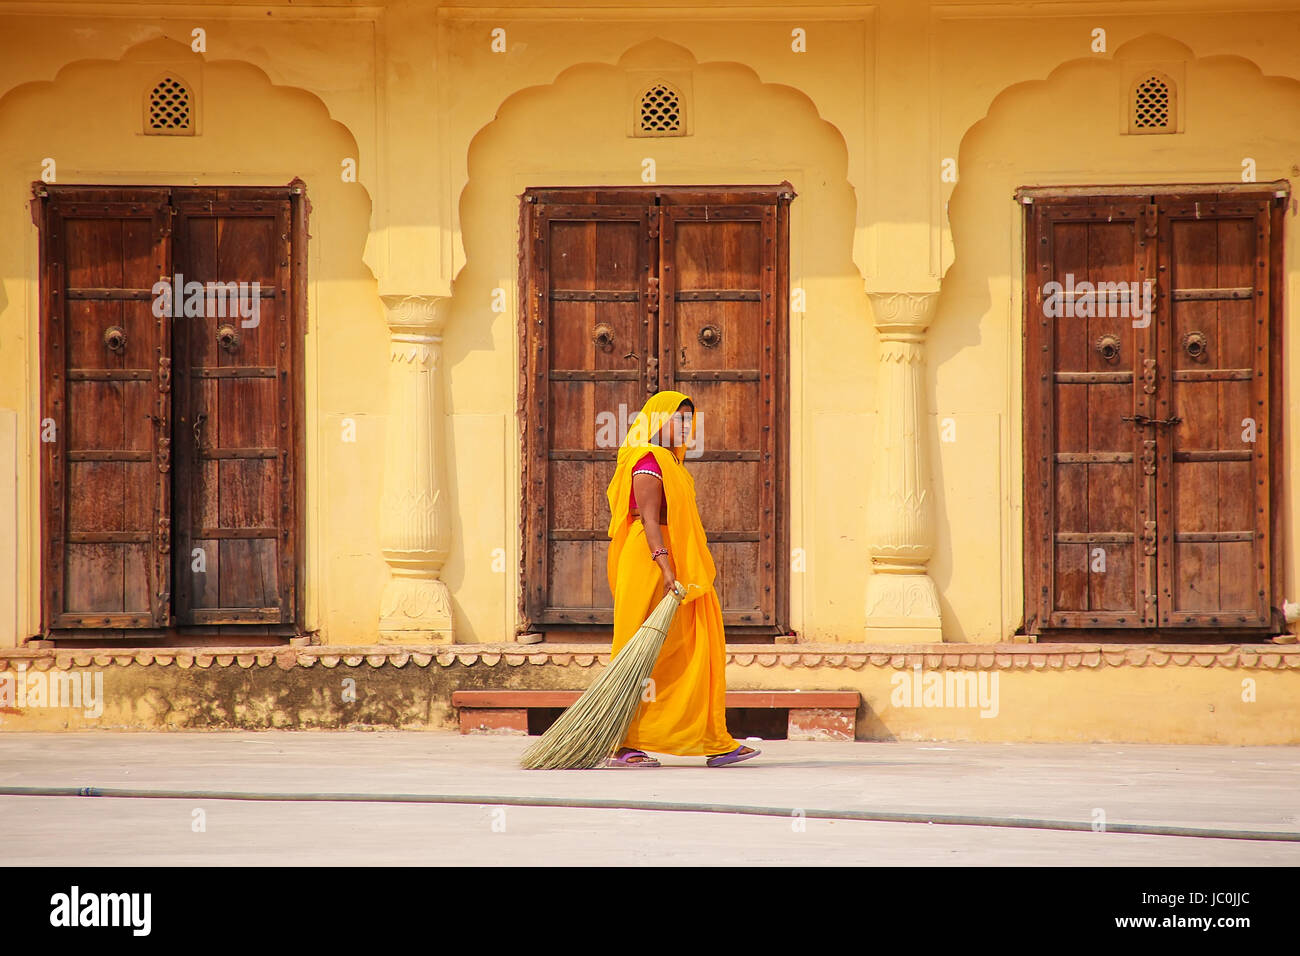 Donna ampie nel secondo cortile del Forte Amber, Rajasthan, India. Forte Amber è la principale attrazione turistica nella zona di Jaipur. Foto Stock